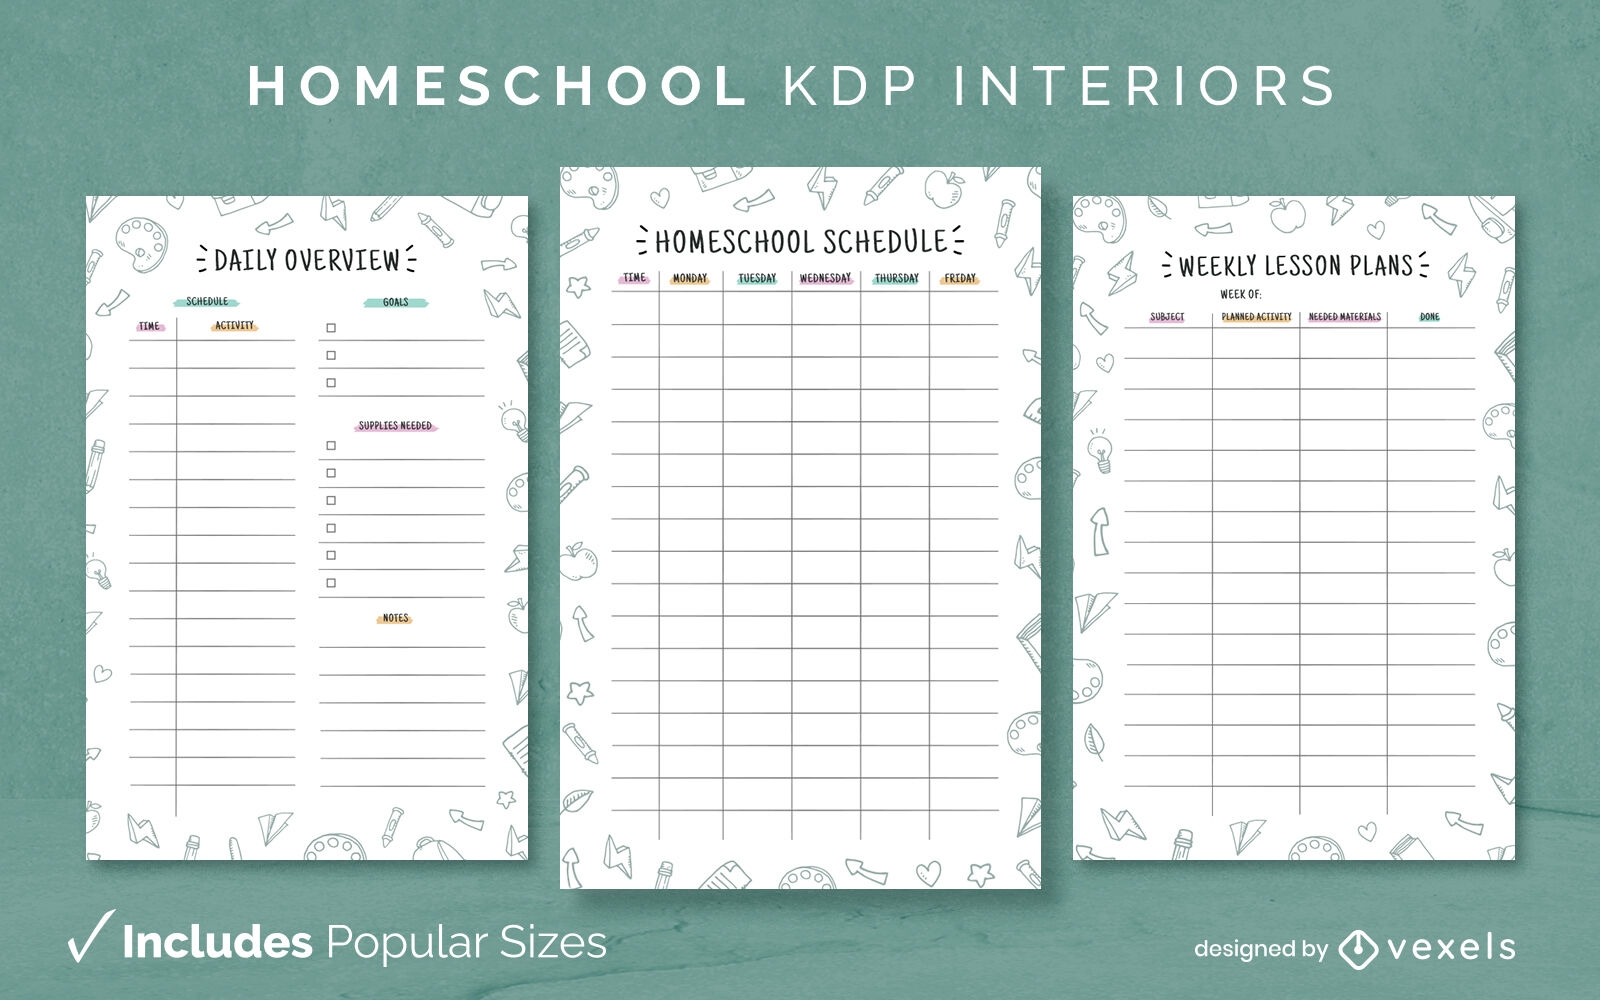 Páginas de design de interiores do kdp para educação em casa